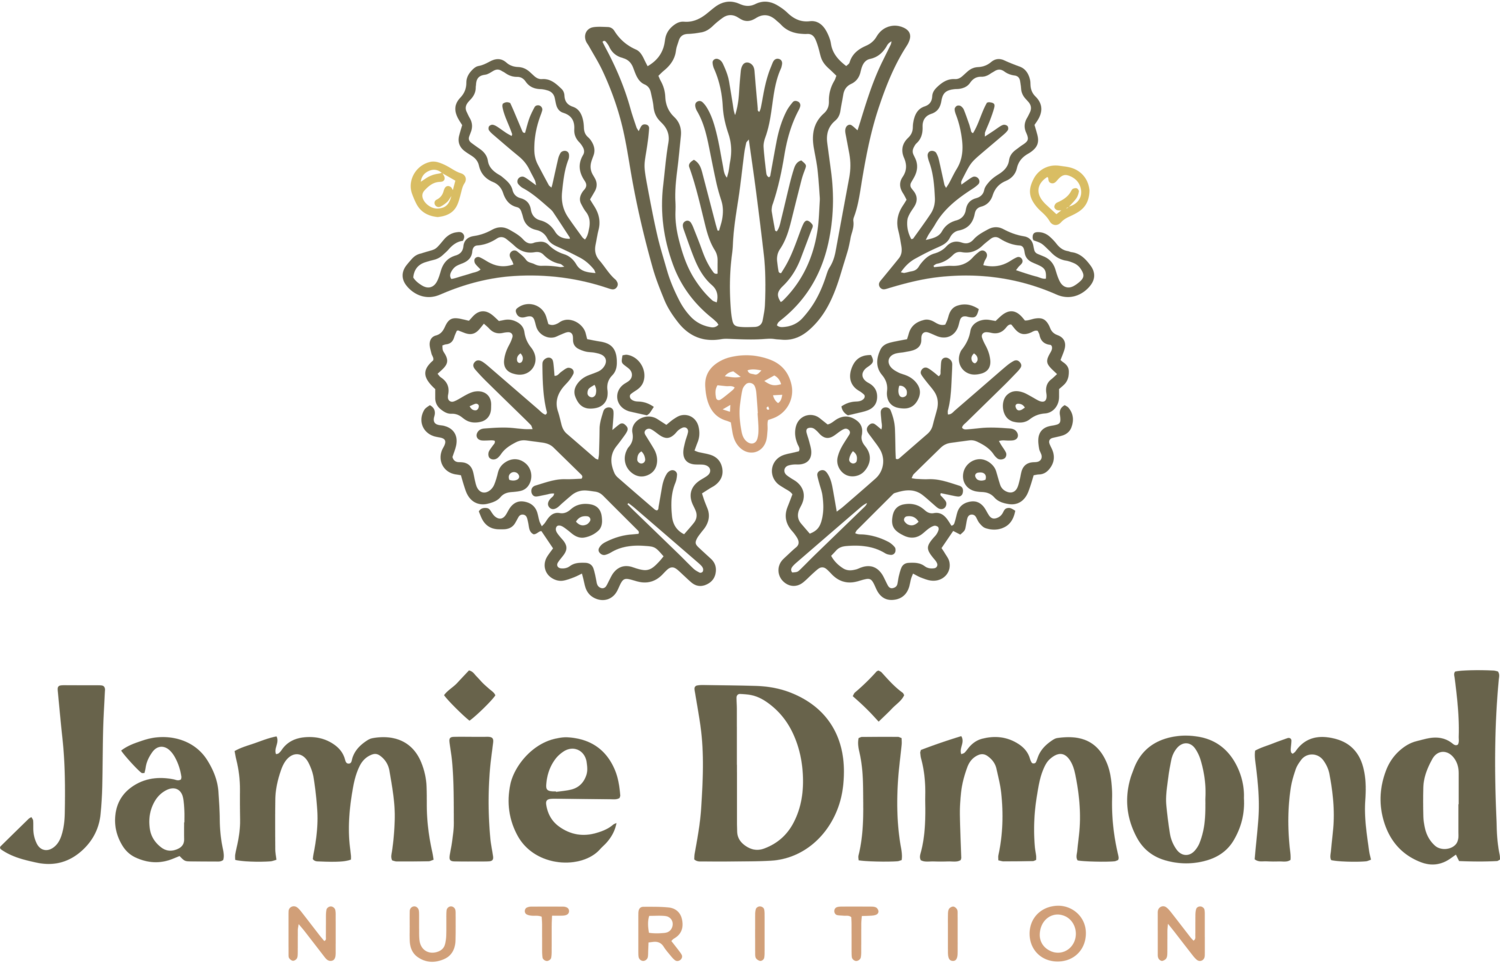 Jamie Dimond Nutrition